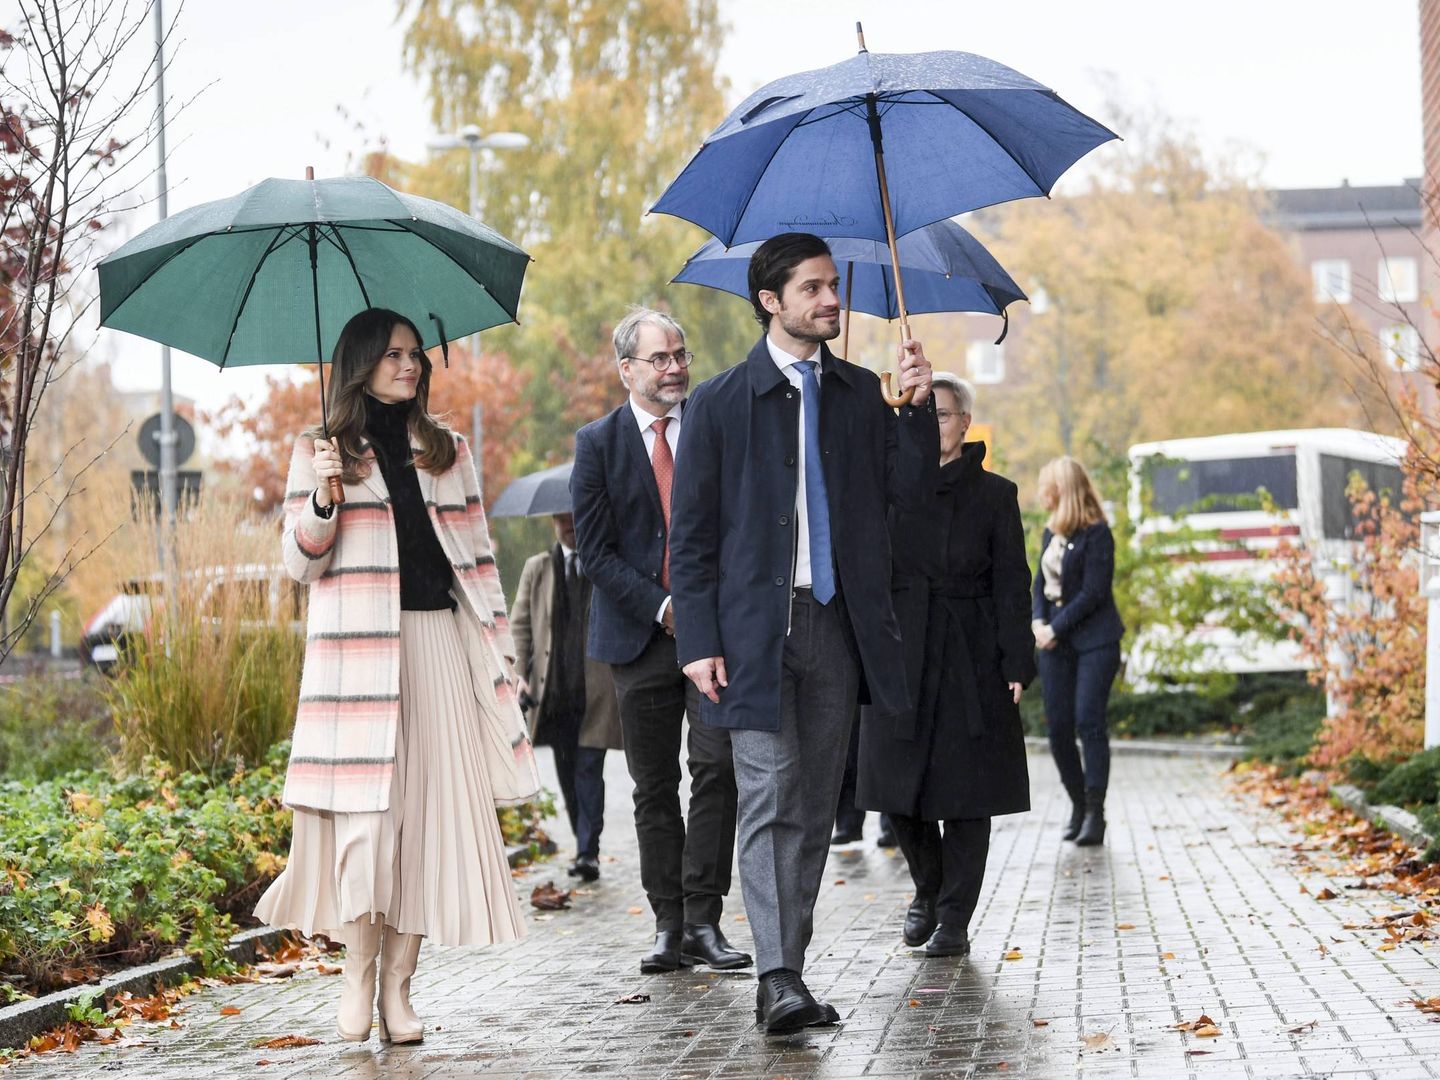 El principe Carlos Felipe y la princesa Sofia de Suecia, a su llegada a un hospital en la provincia de Värmland. (Cordon Press)